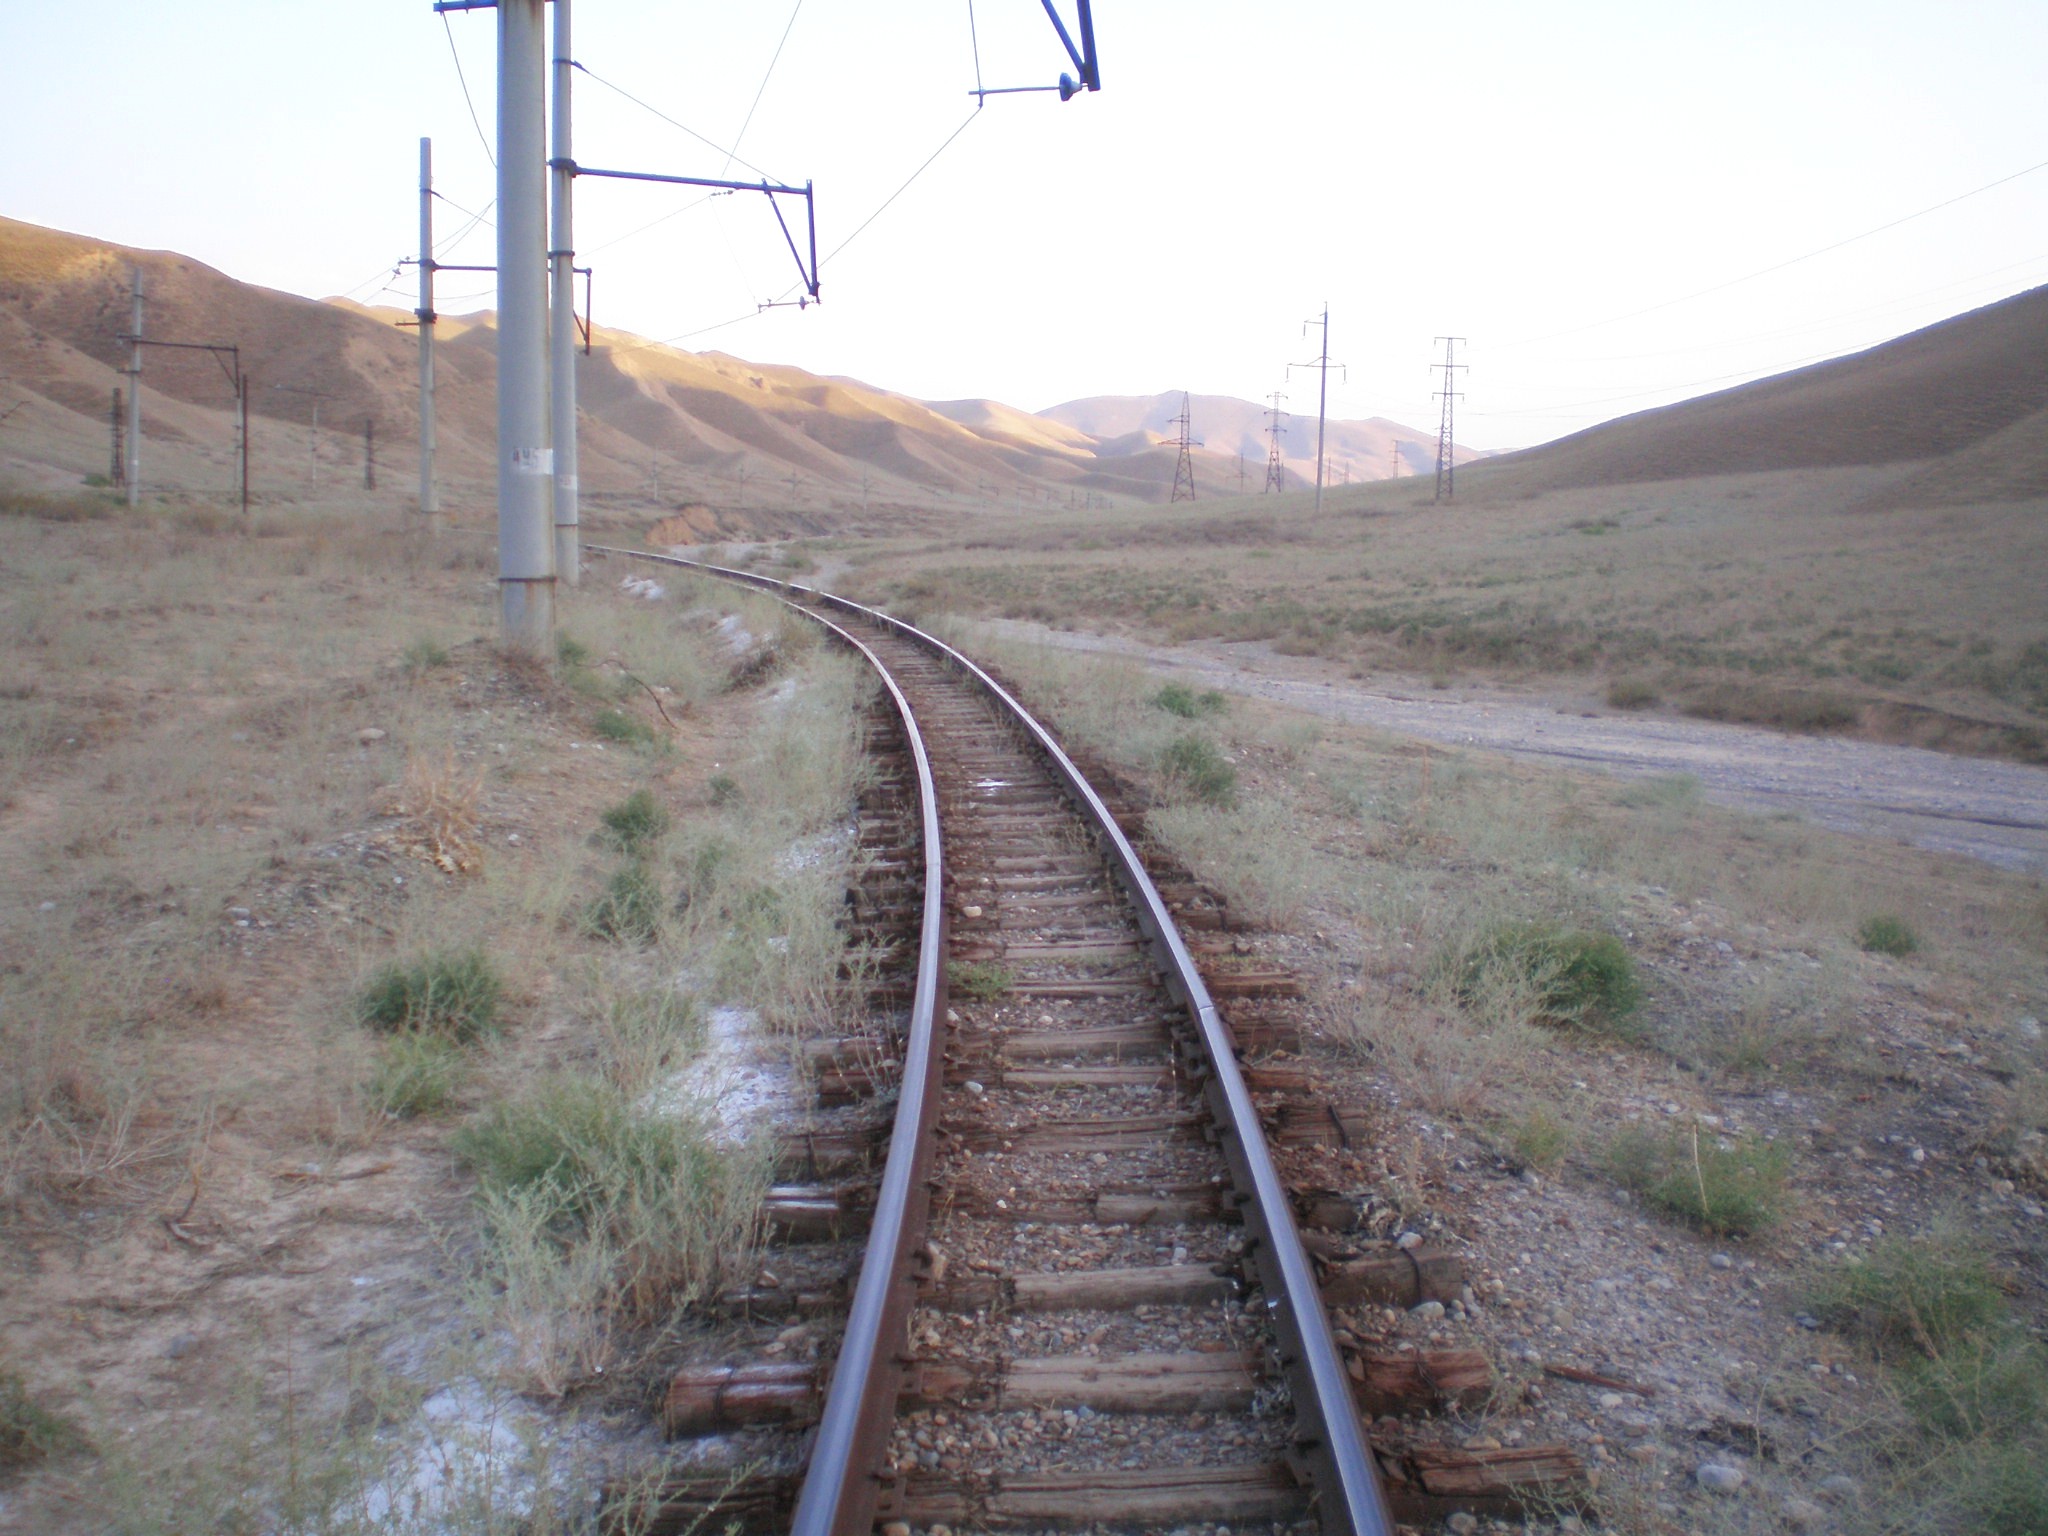 Сулюктинская узкоколейная железная дорога  —  фотографии, сделанные в 2008 году (часть 29)